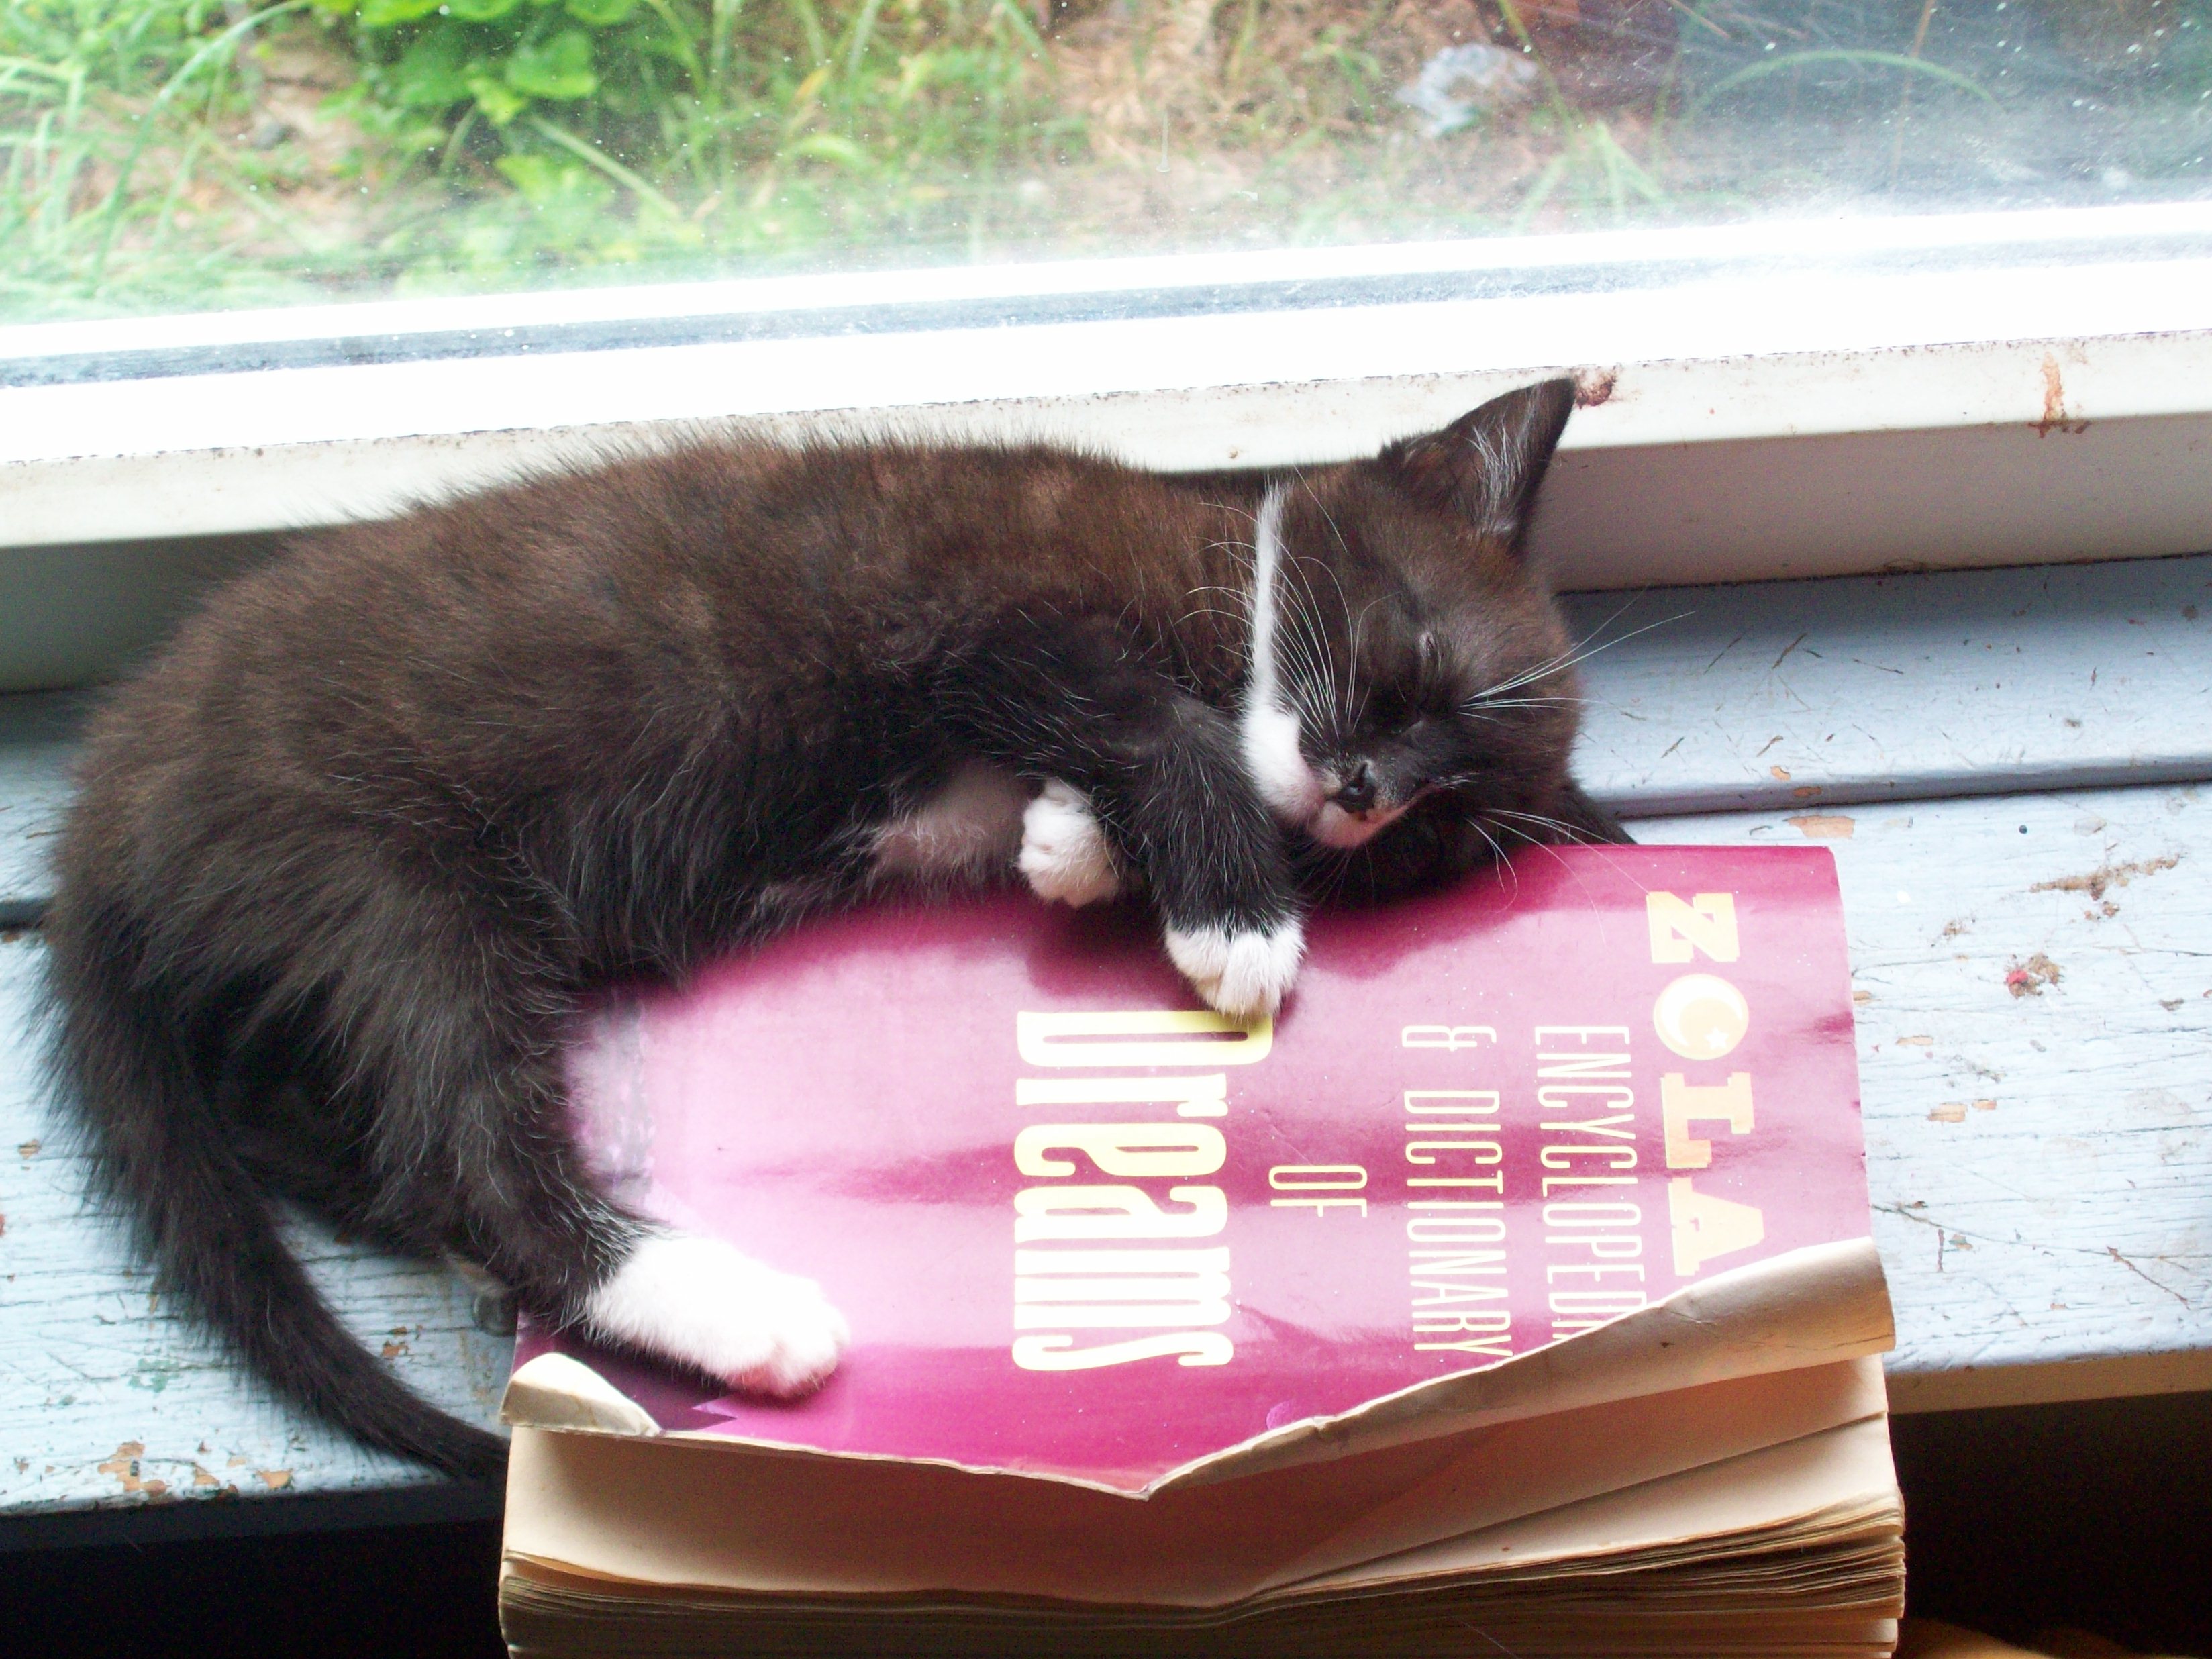 cats, animals, books, kittens - desktop wallpaper